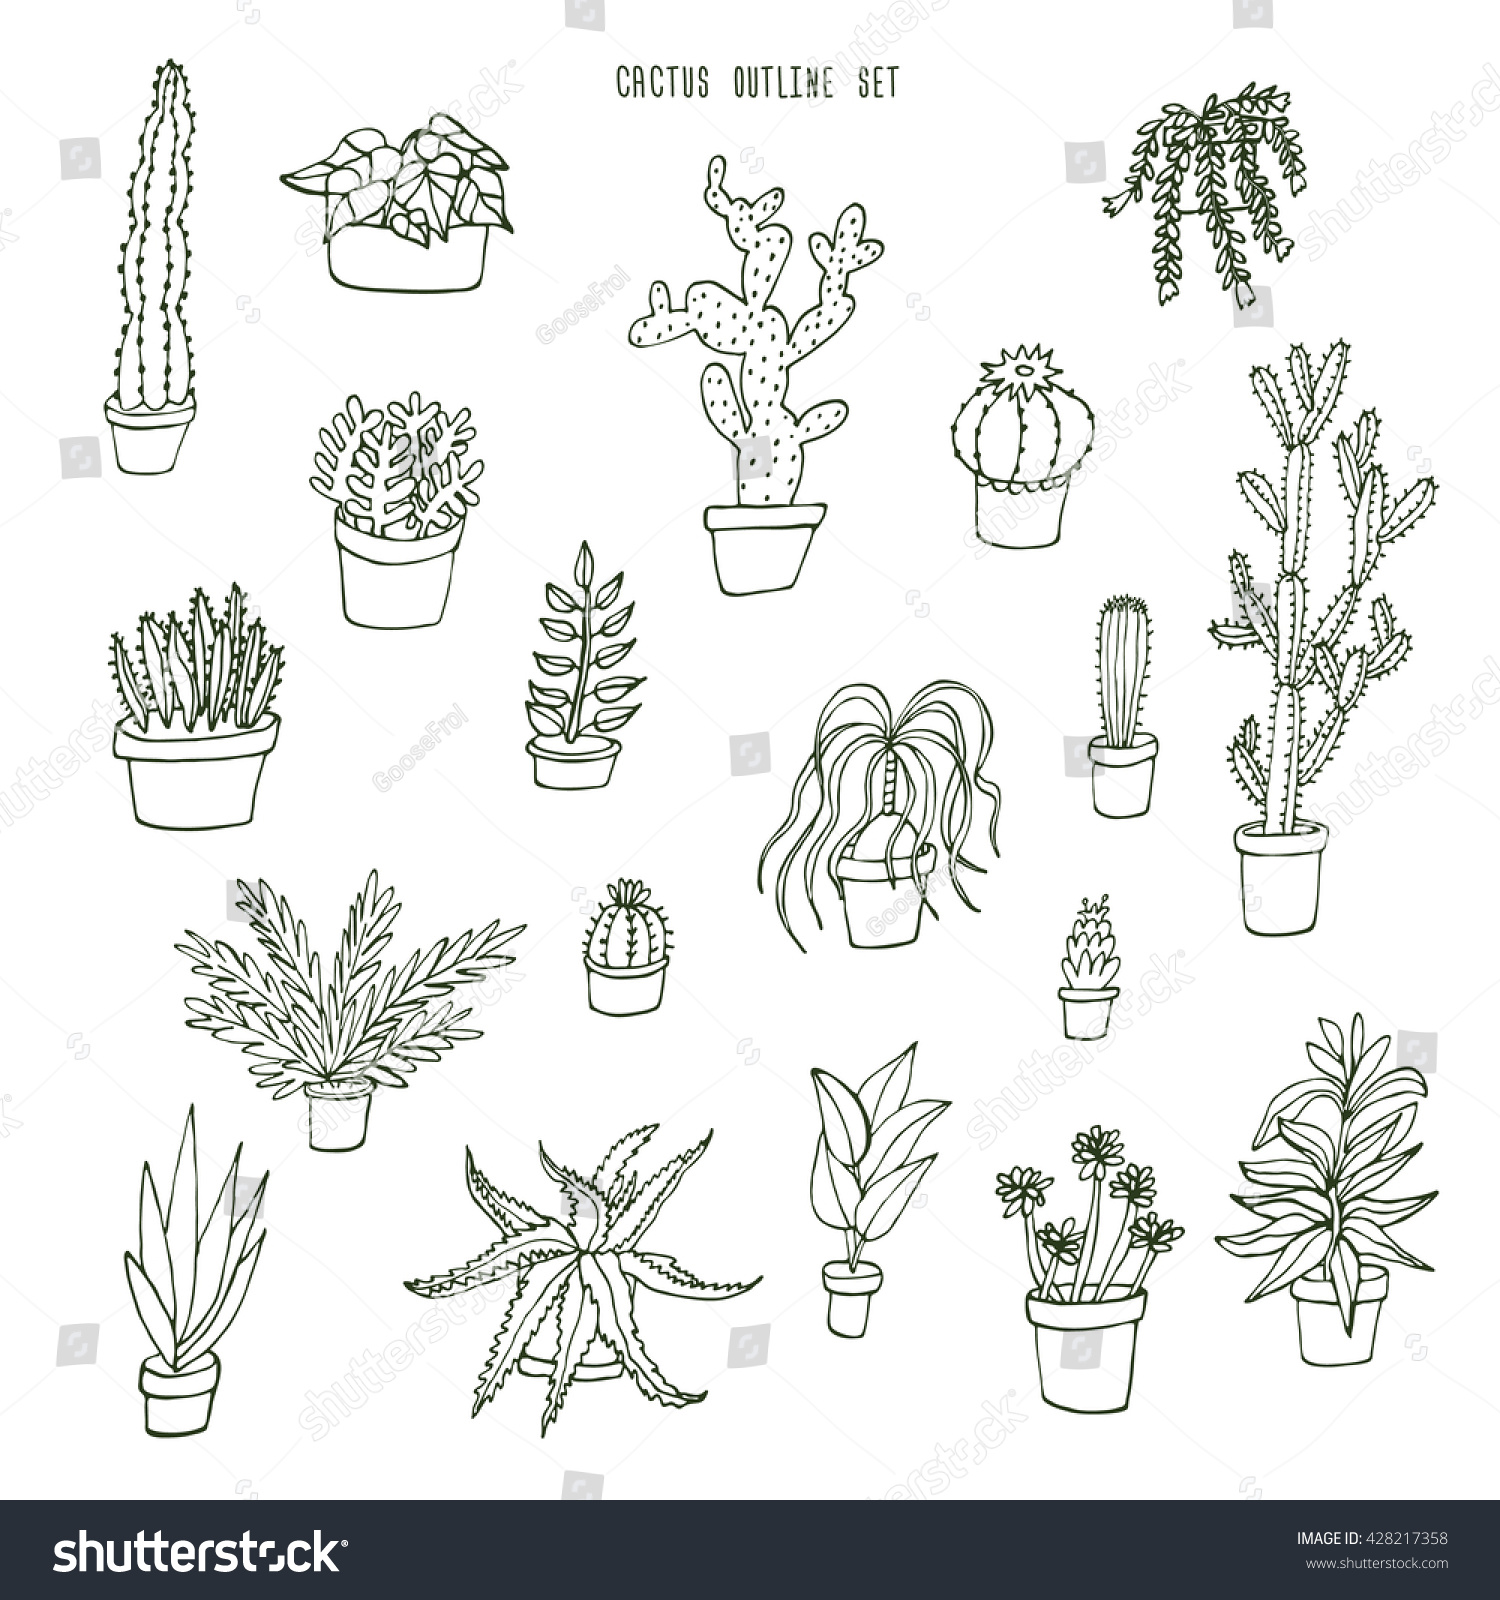 Succulent Cactus Outline Set: Ñ�Ñ‚Ð¾ÐºÐ¾Ð²Ð°Ñ� Ð²ÐµÐºÑ‚Ð¾Ñ€Ð½Ð°Ñ� Ð³Ñ€Ð°Ñ„Ð¸ÐºÐ° (Ð±ÐµÐ· Ð»Ð¸Ñ†ÐµÐ½Ð·Ð¸Ð¾Ð½Ð½Ñ‹Ñ… ...